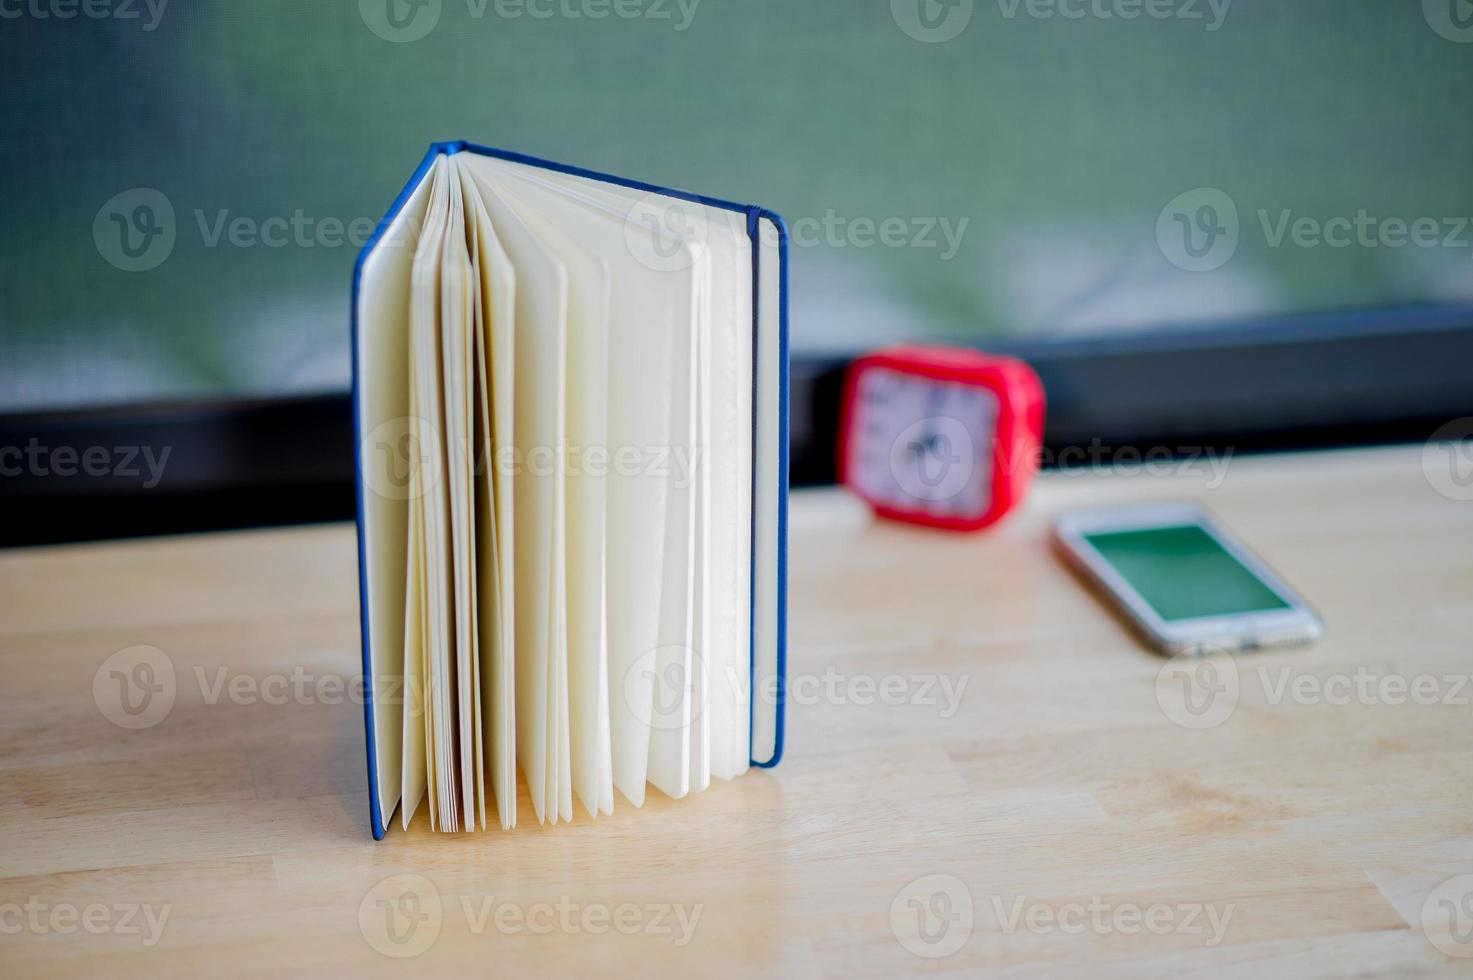 manos y libros que quedan al descubierto con espacio en la sala de la mañana concepto de lectura de libros foto